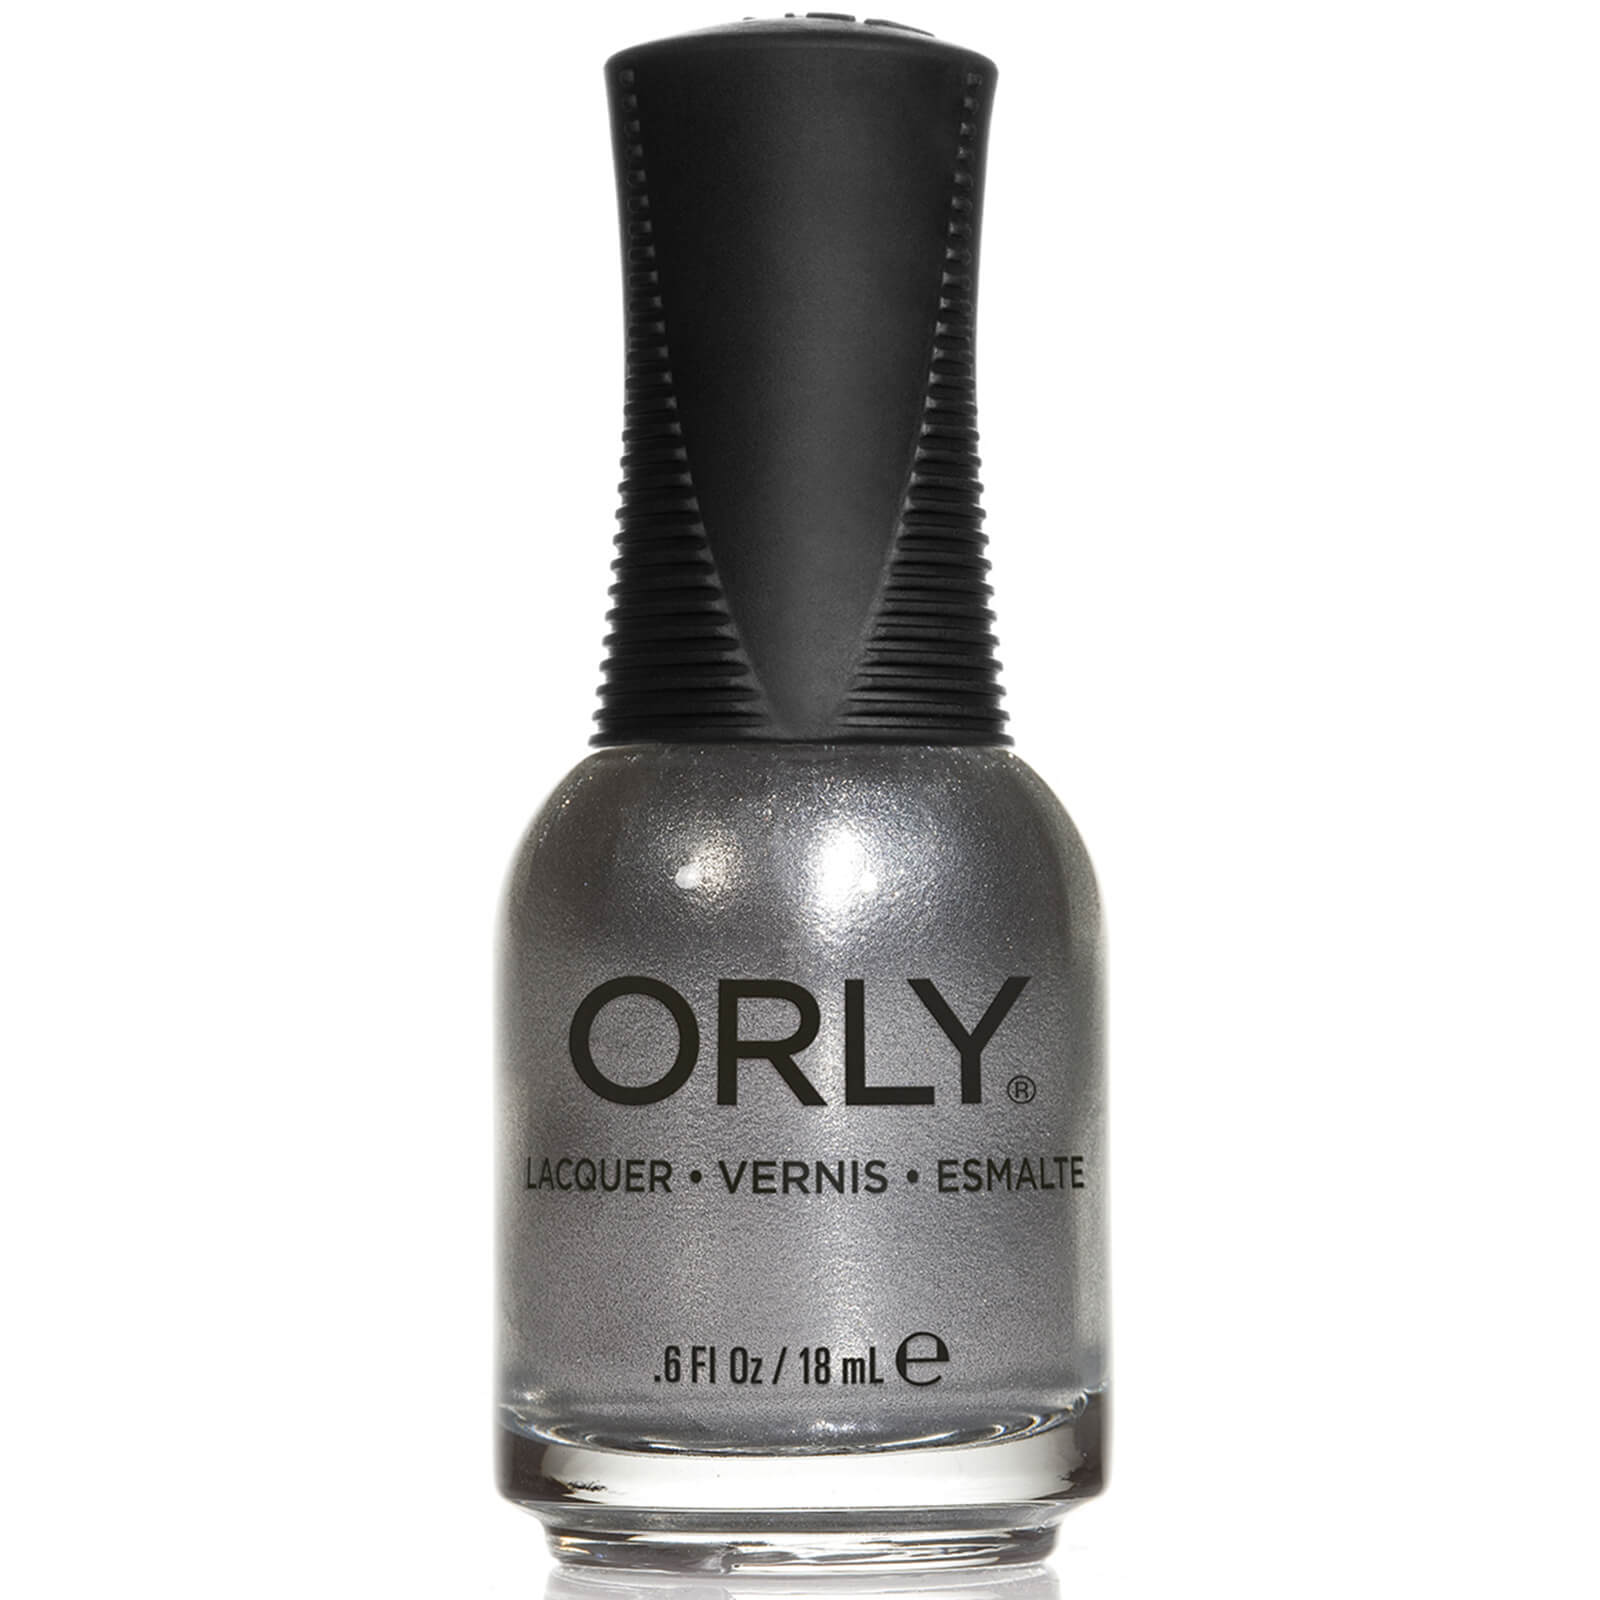 Orly Nail Lacquer 18ml (Various Shades) – Shine lookfantastic.com imagine